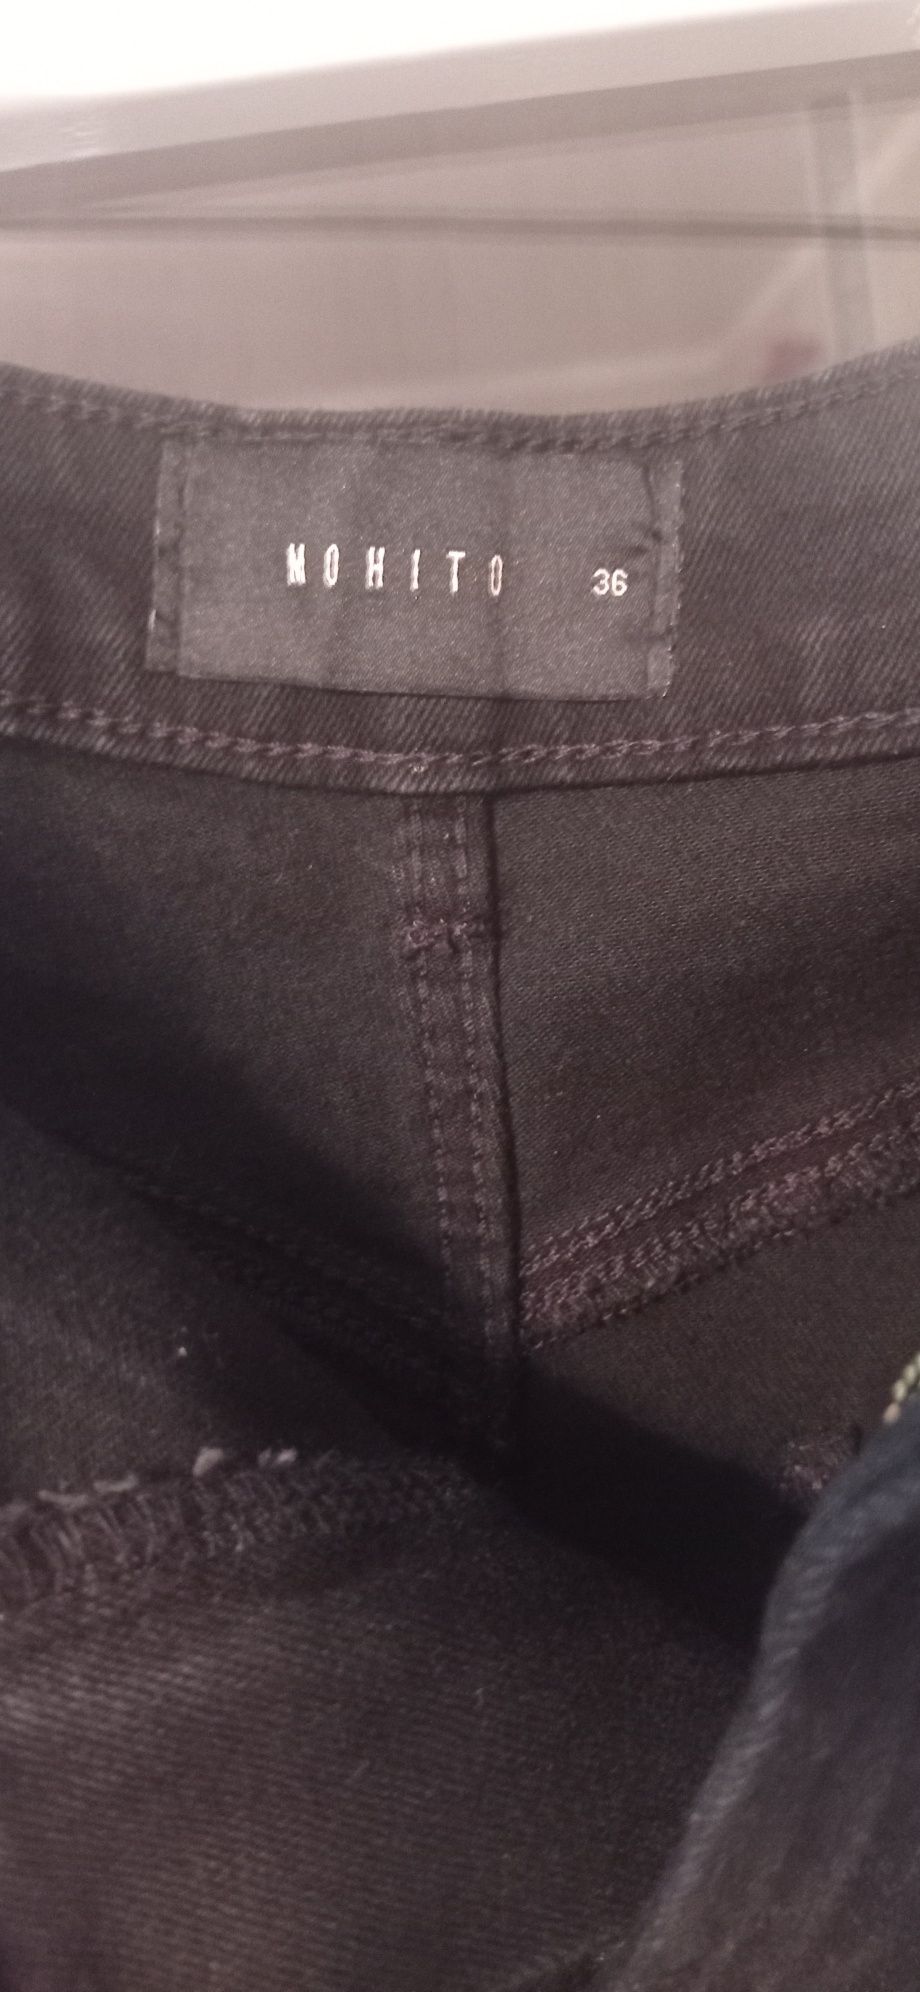 Spodnie Mohito S